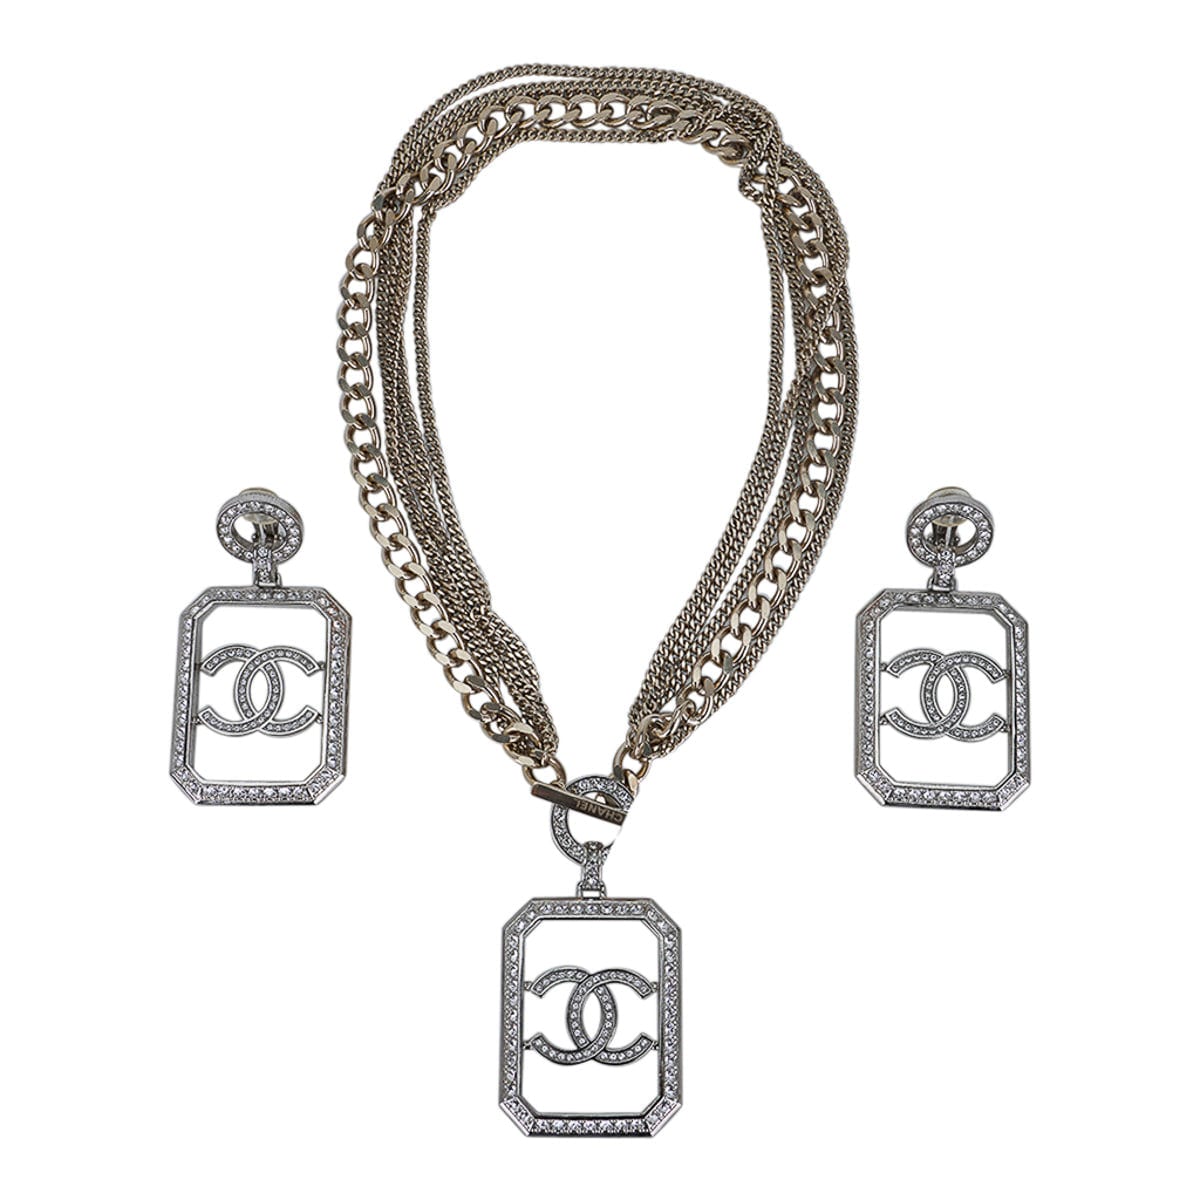 Chanel Necklace Multi Chain Silver CC Diamante Pendant